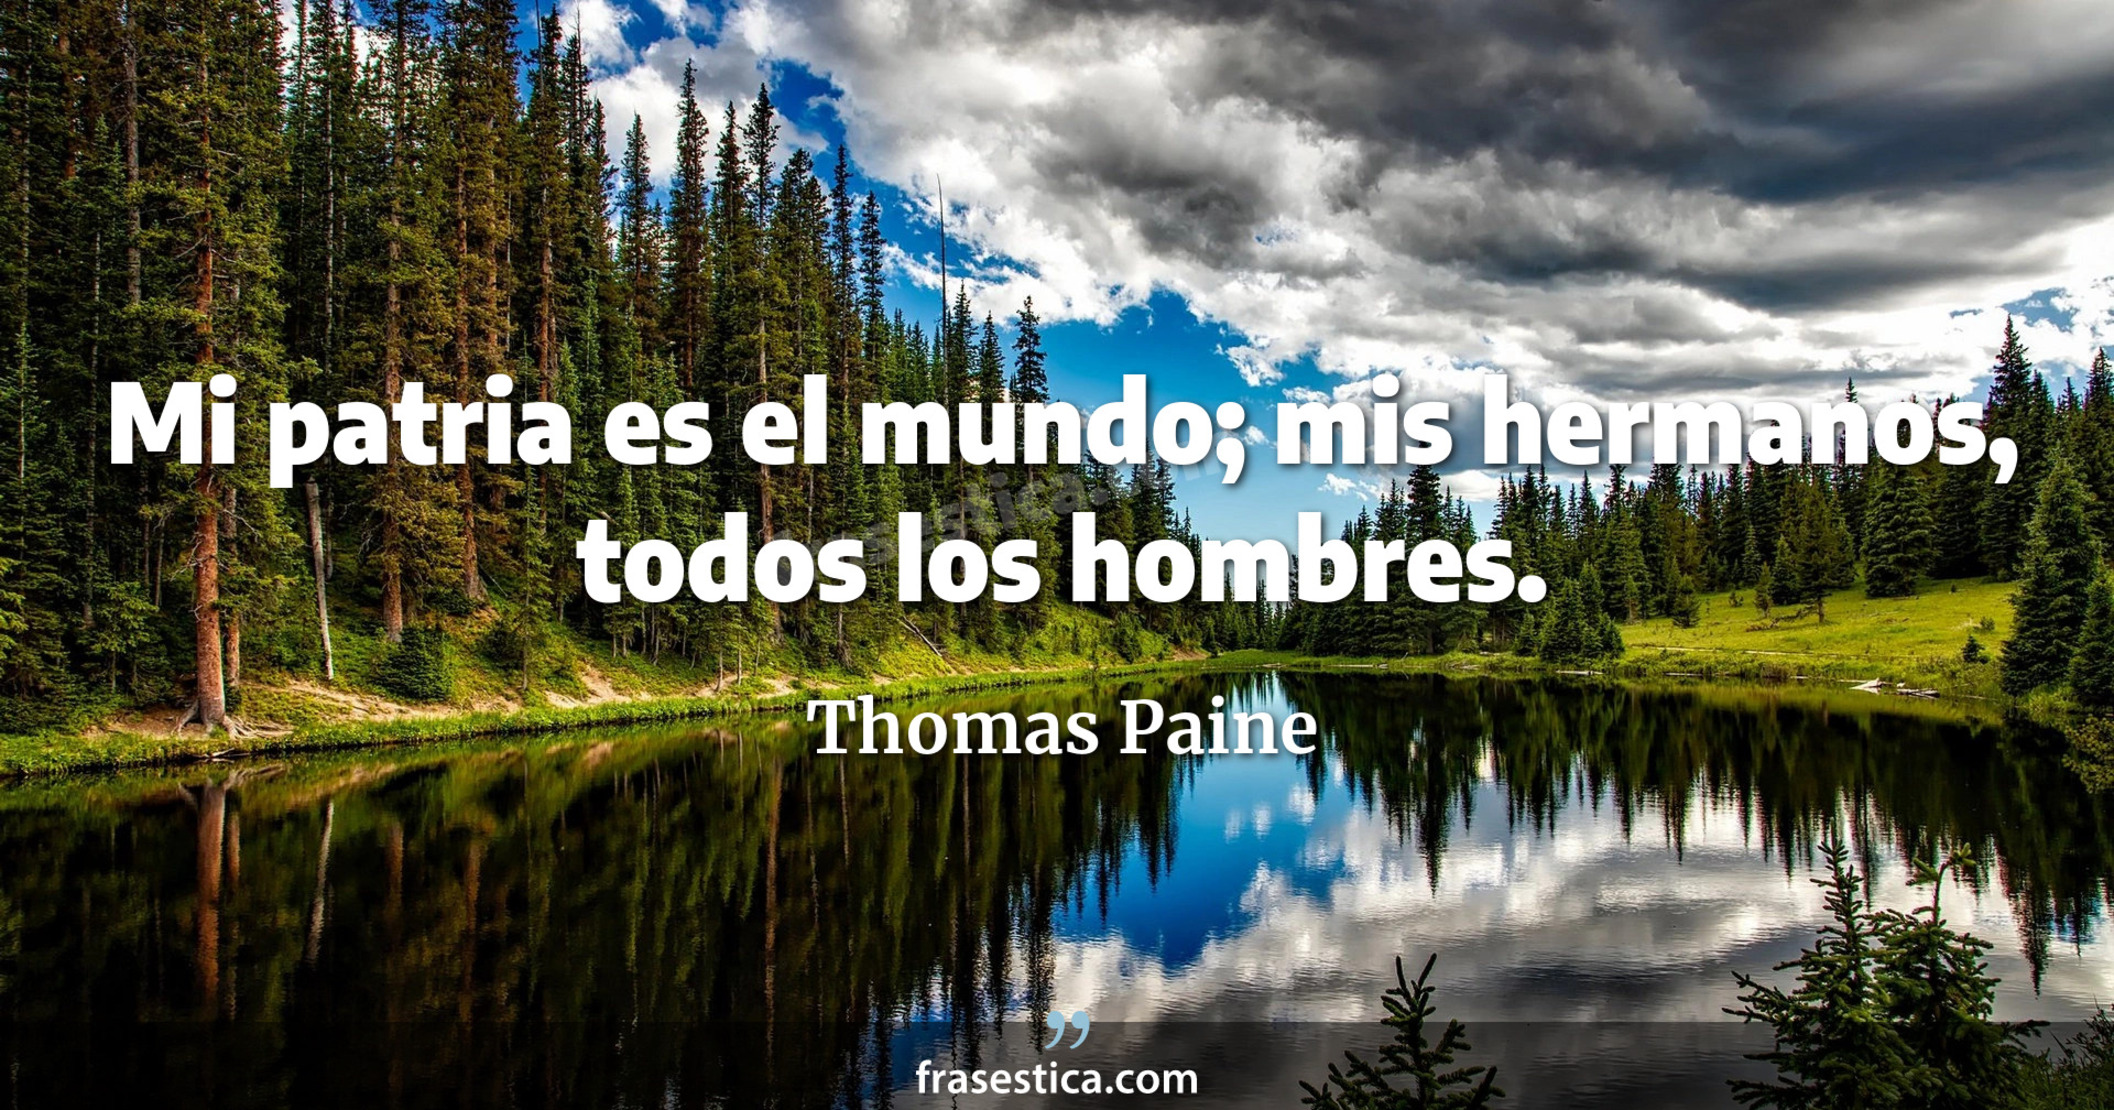 Mi patria es el mundo; mis hermanos, todos los hombres. - Thomas Paine